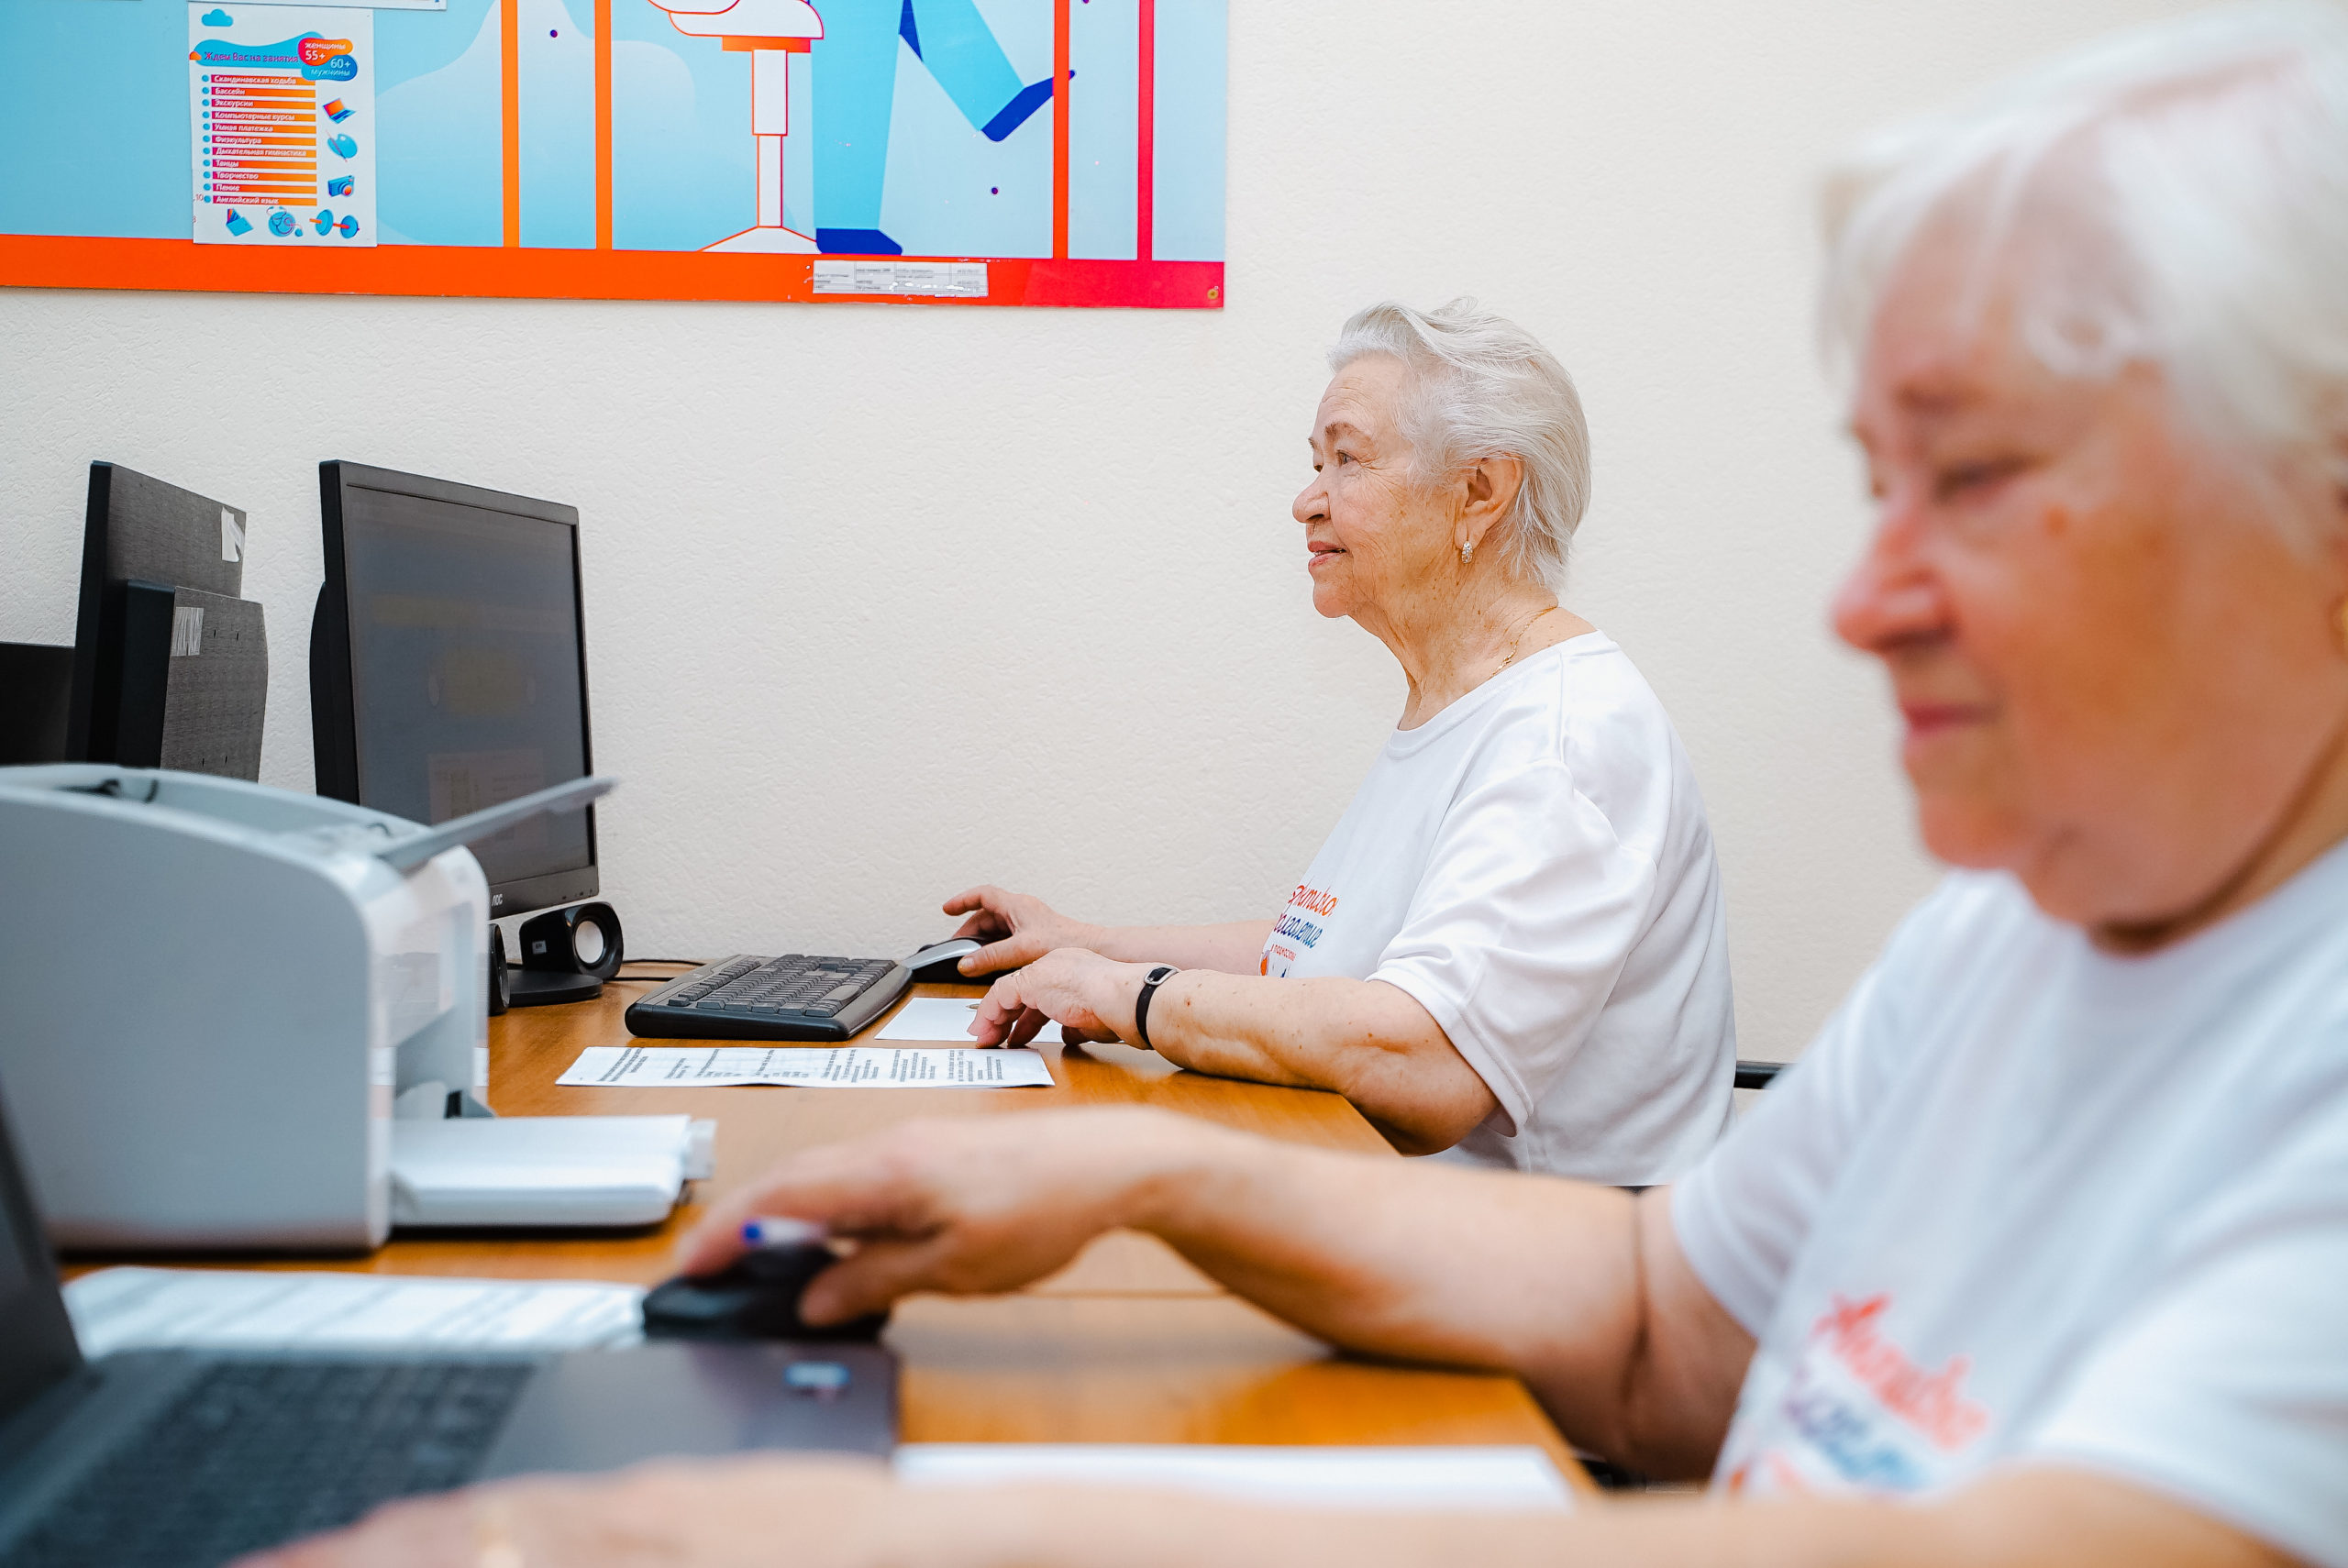 В Орехово-Зуевском округе завершился муниципальный этап чемпионата по компьютерному многоборью среди пенсионеров